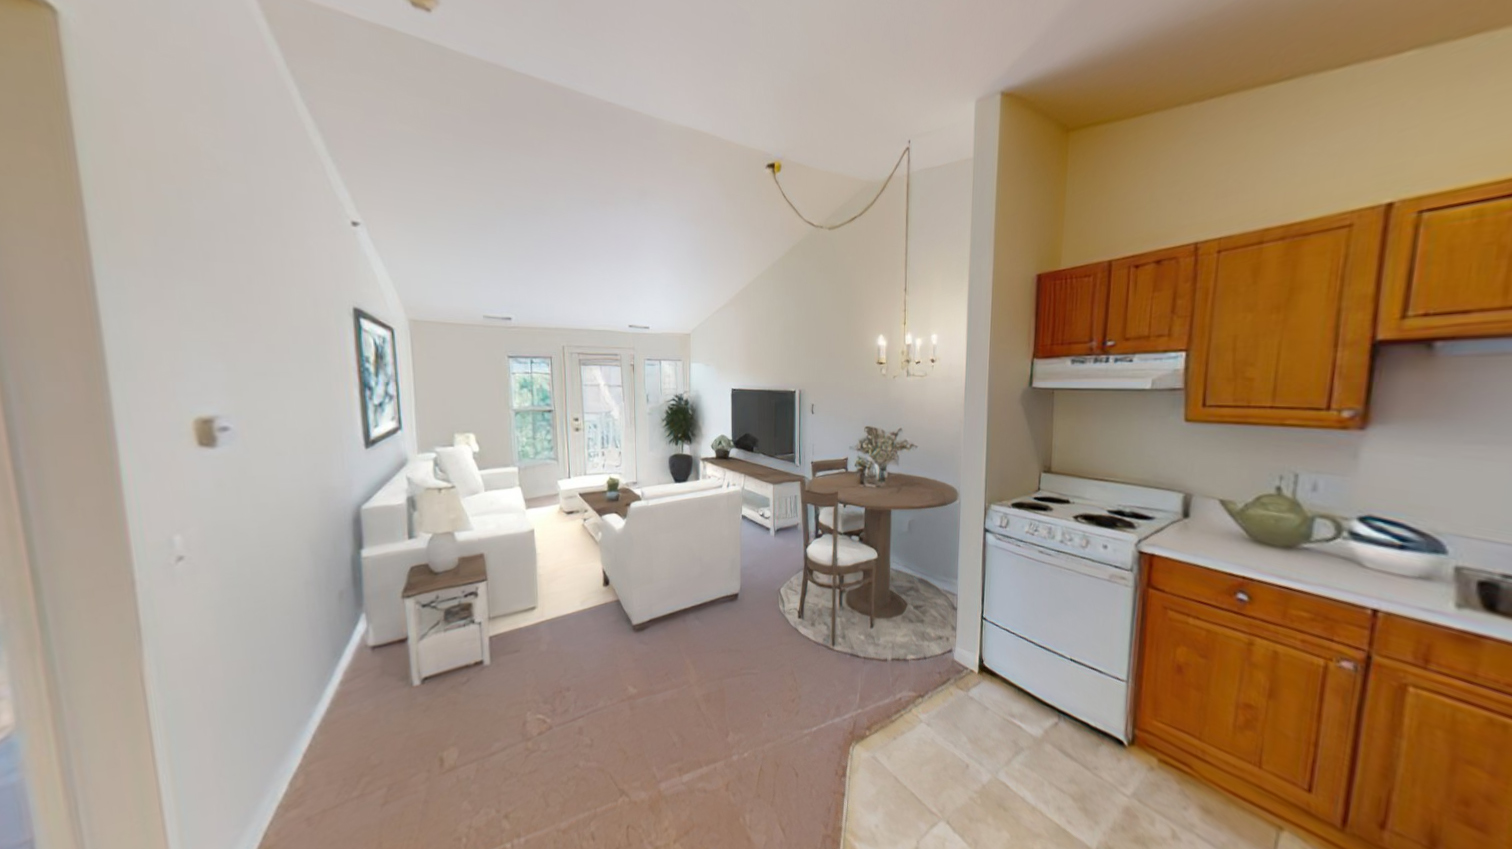 1 bedroom apartment interior at Lyon Township at Abbey Park